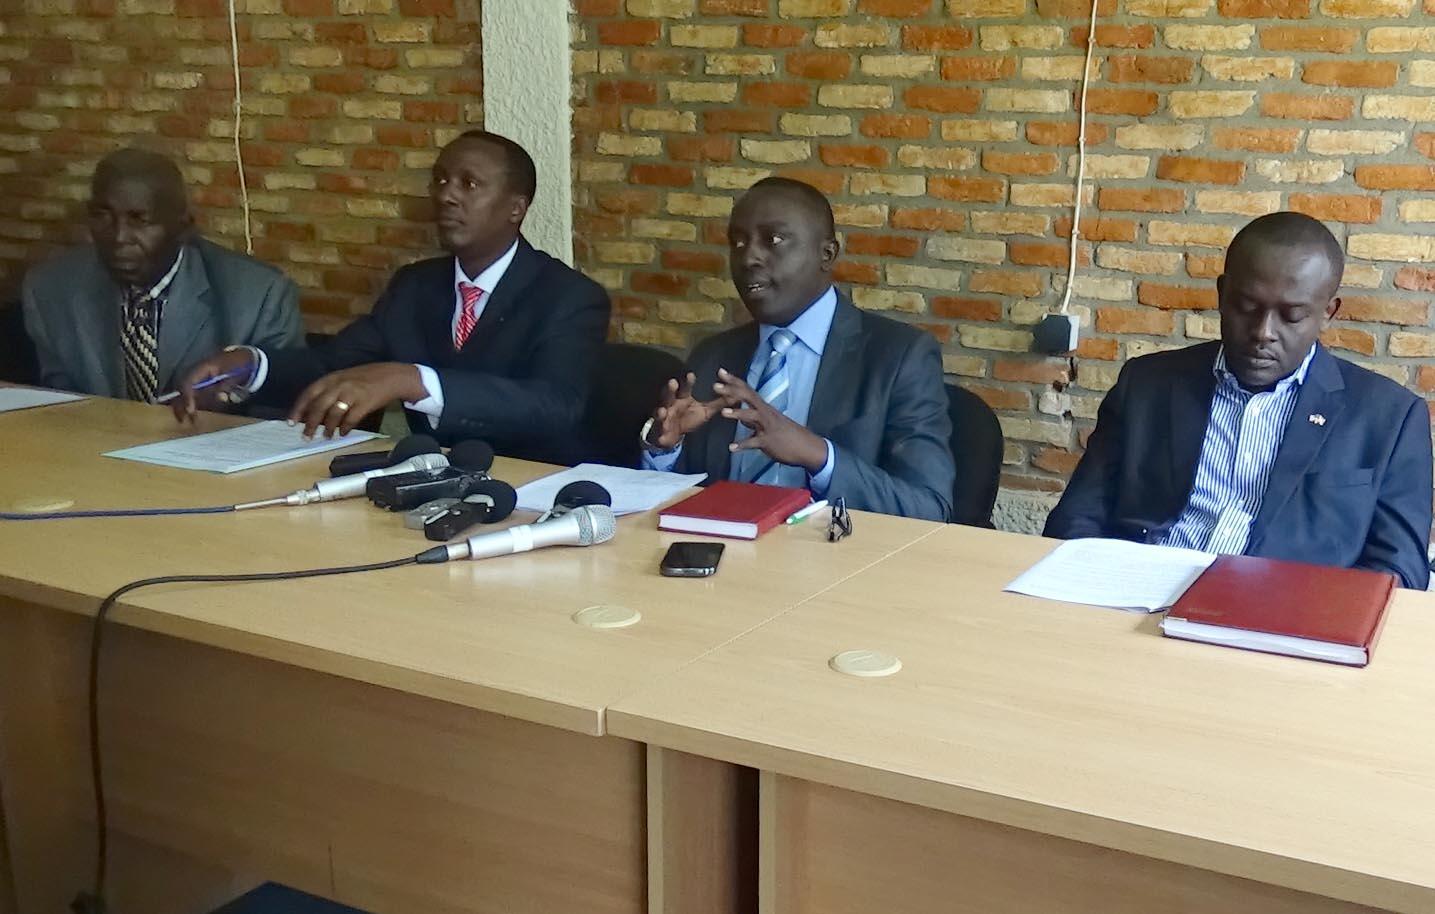 Des représentants de 4 des 10 organisations radiées ou suspendues par le gouvernement burundais: de gauche à droite, Pierre Claver Mbonimpa (APRODH), Vital Nshimirimana (FORSC), Pacifique Nininahazwe (FOCODE), et Armel Niyongere (ACAT).